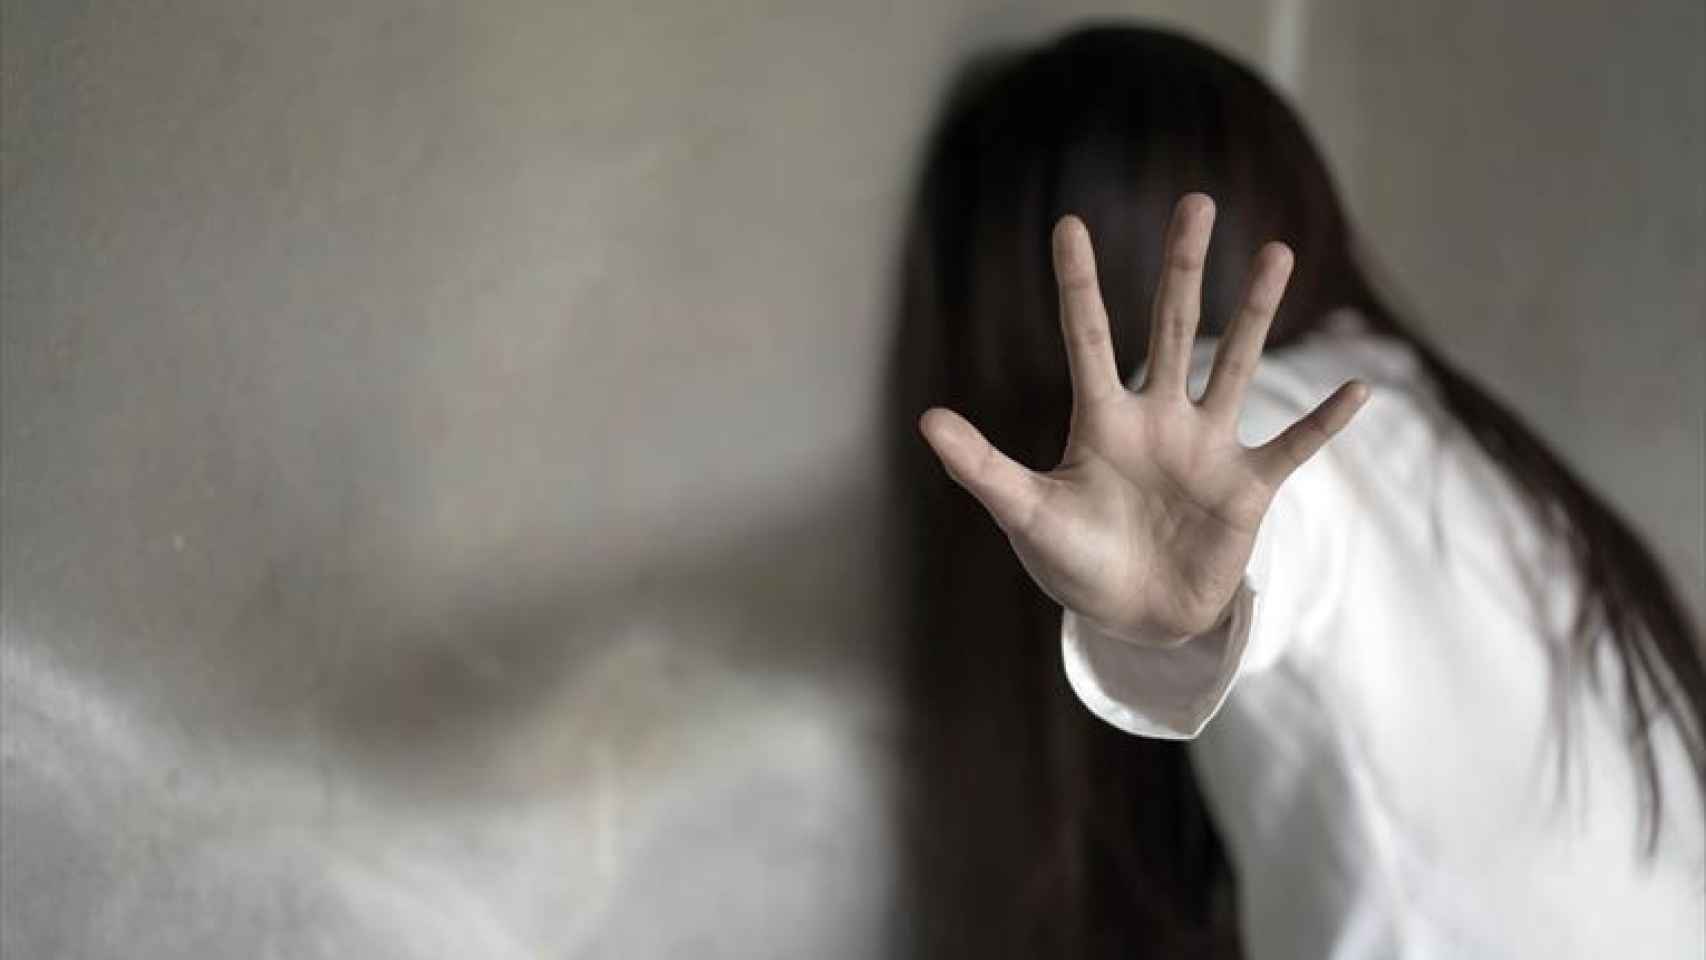 La joven fue violada en 2001 en la casa familiar en Alemania.